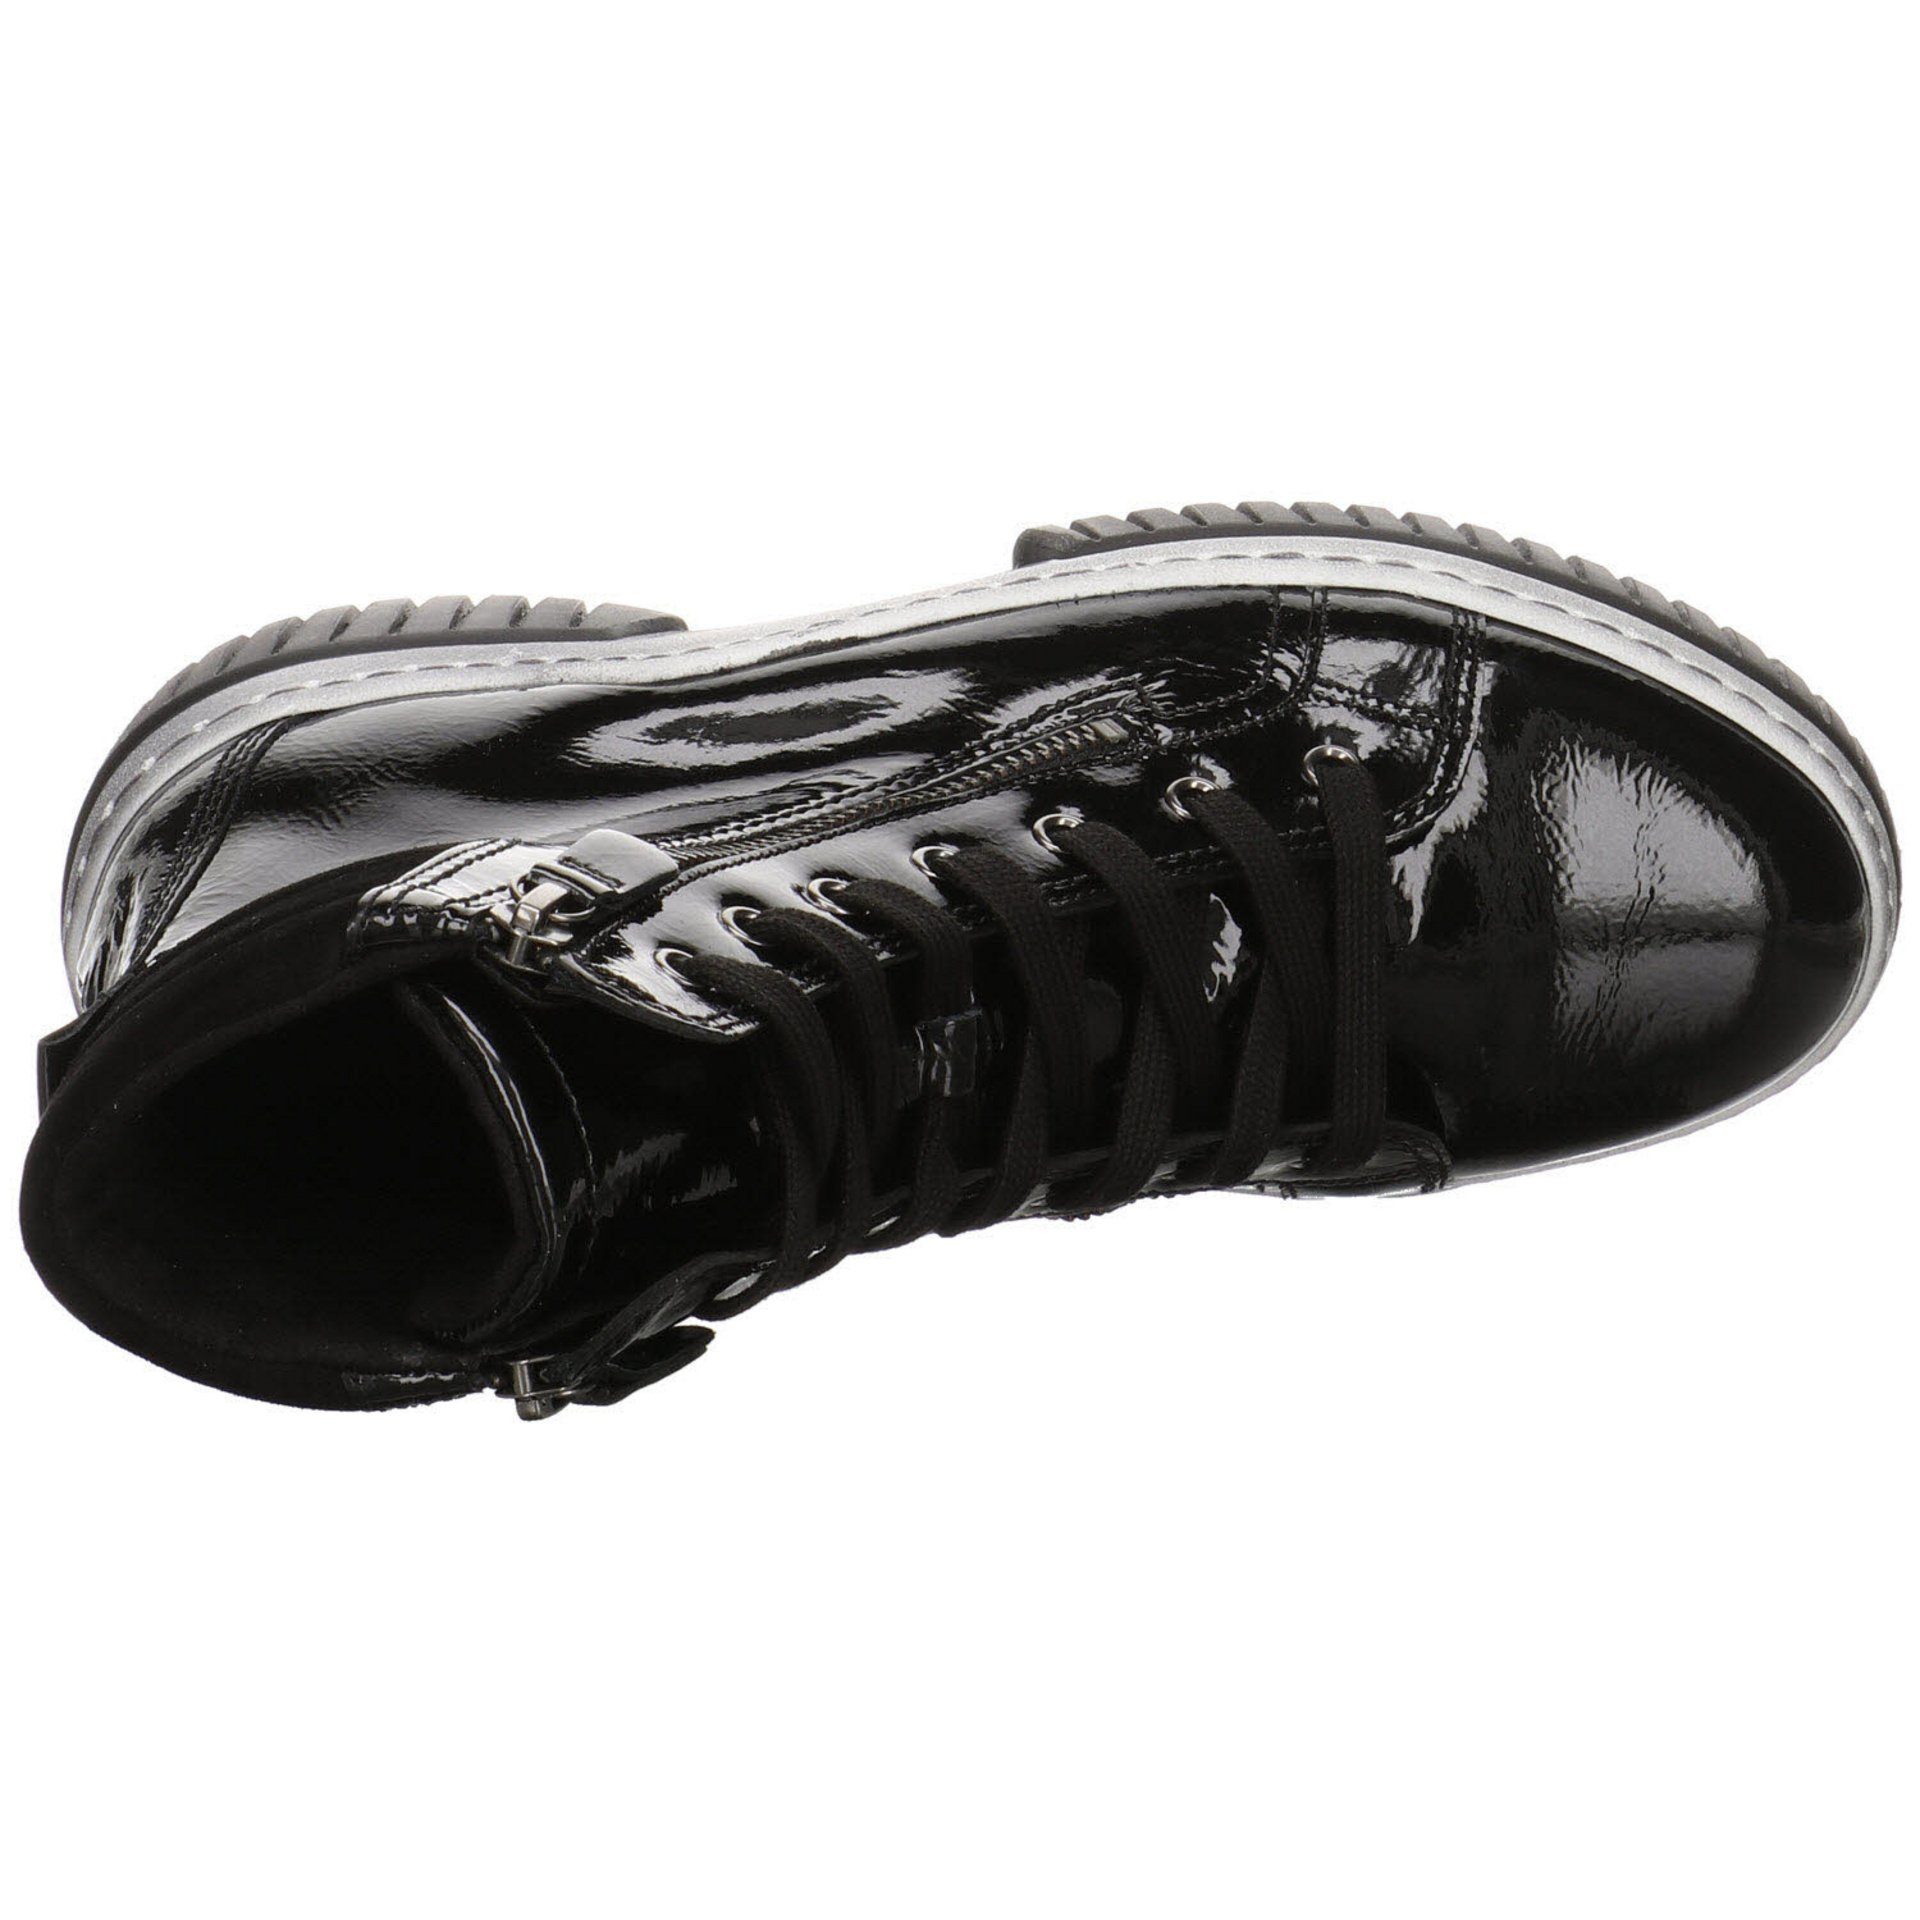 Gabor schwarz(altsilber) Schnürstiefel Elegant Lackleder Boots Schuhe Stiefeletten Damen Freizeit